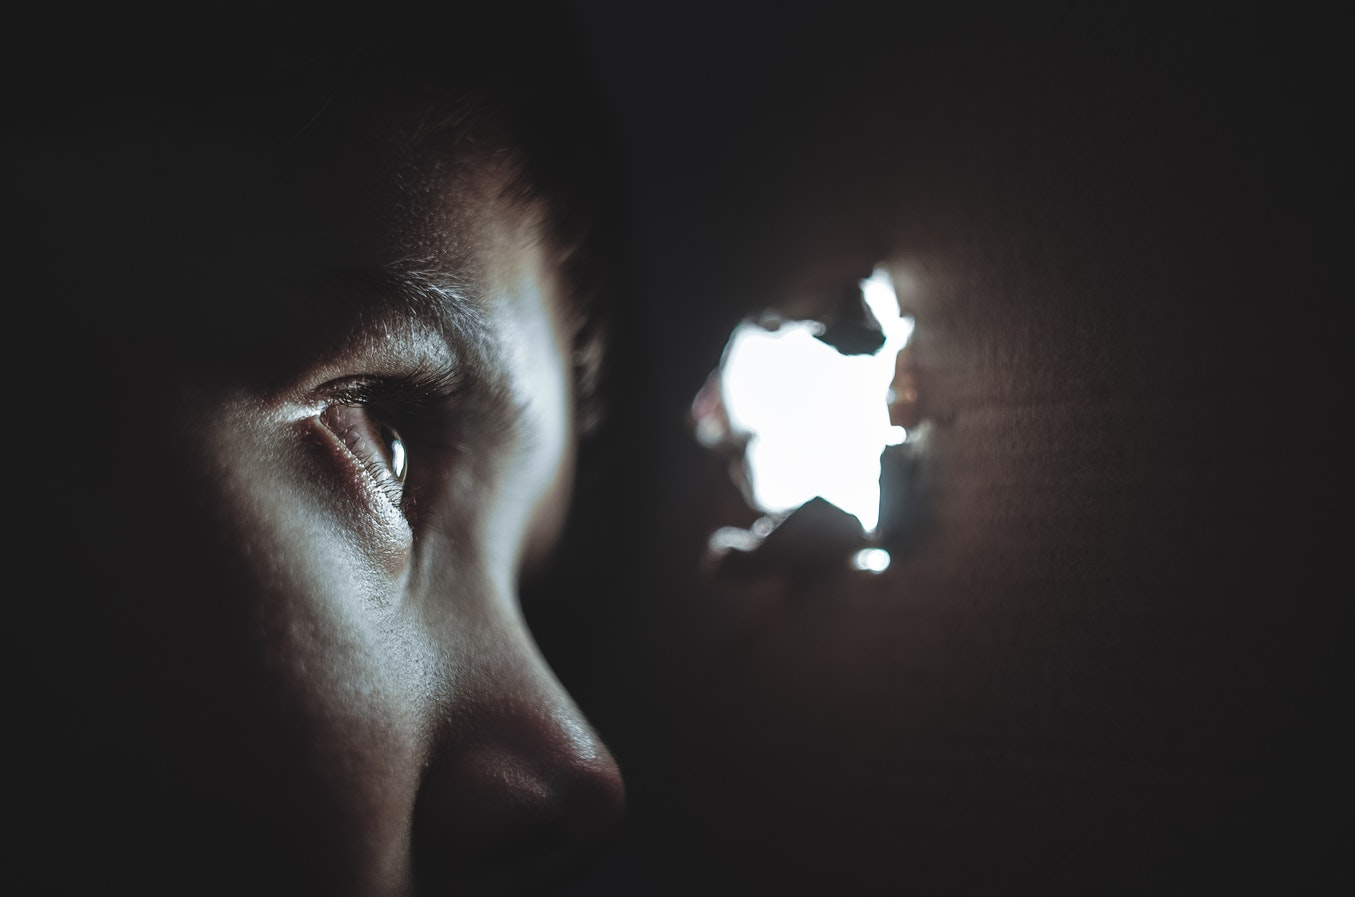 Una joven mira a través de un agujero. Foto: Dmitry Ratushny en Unsplash